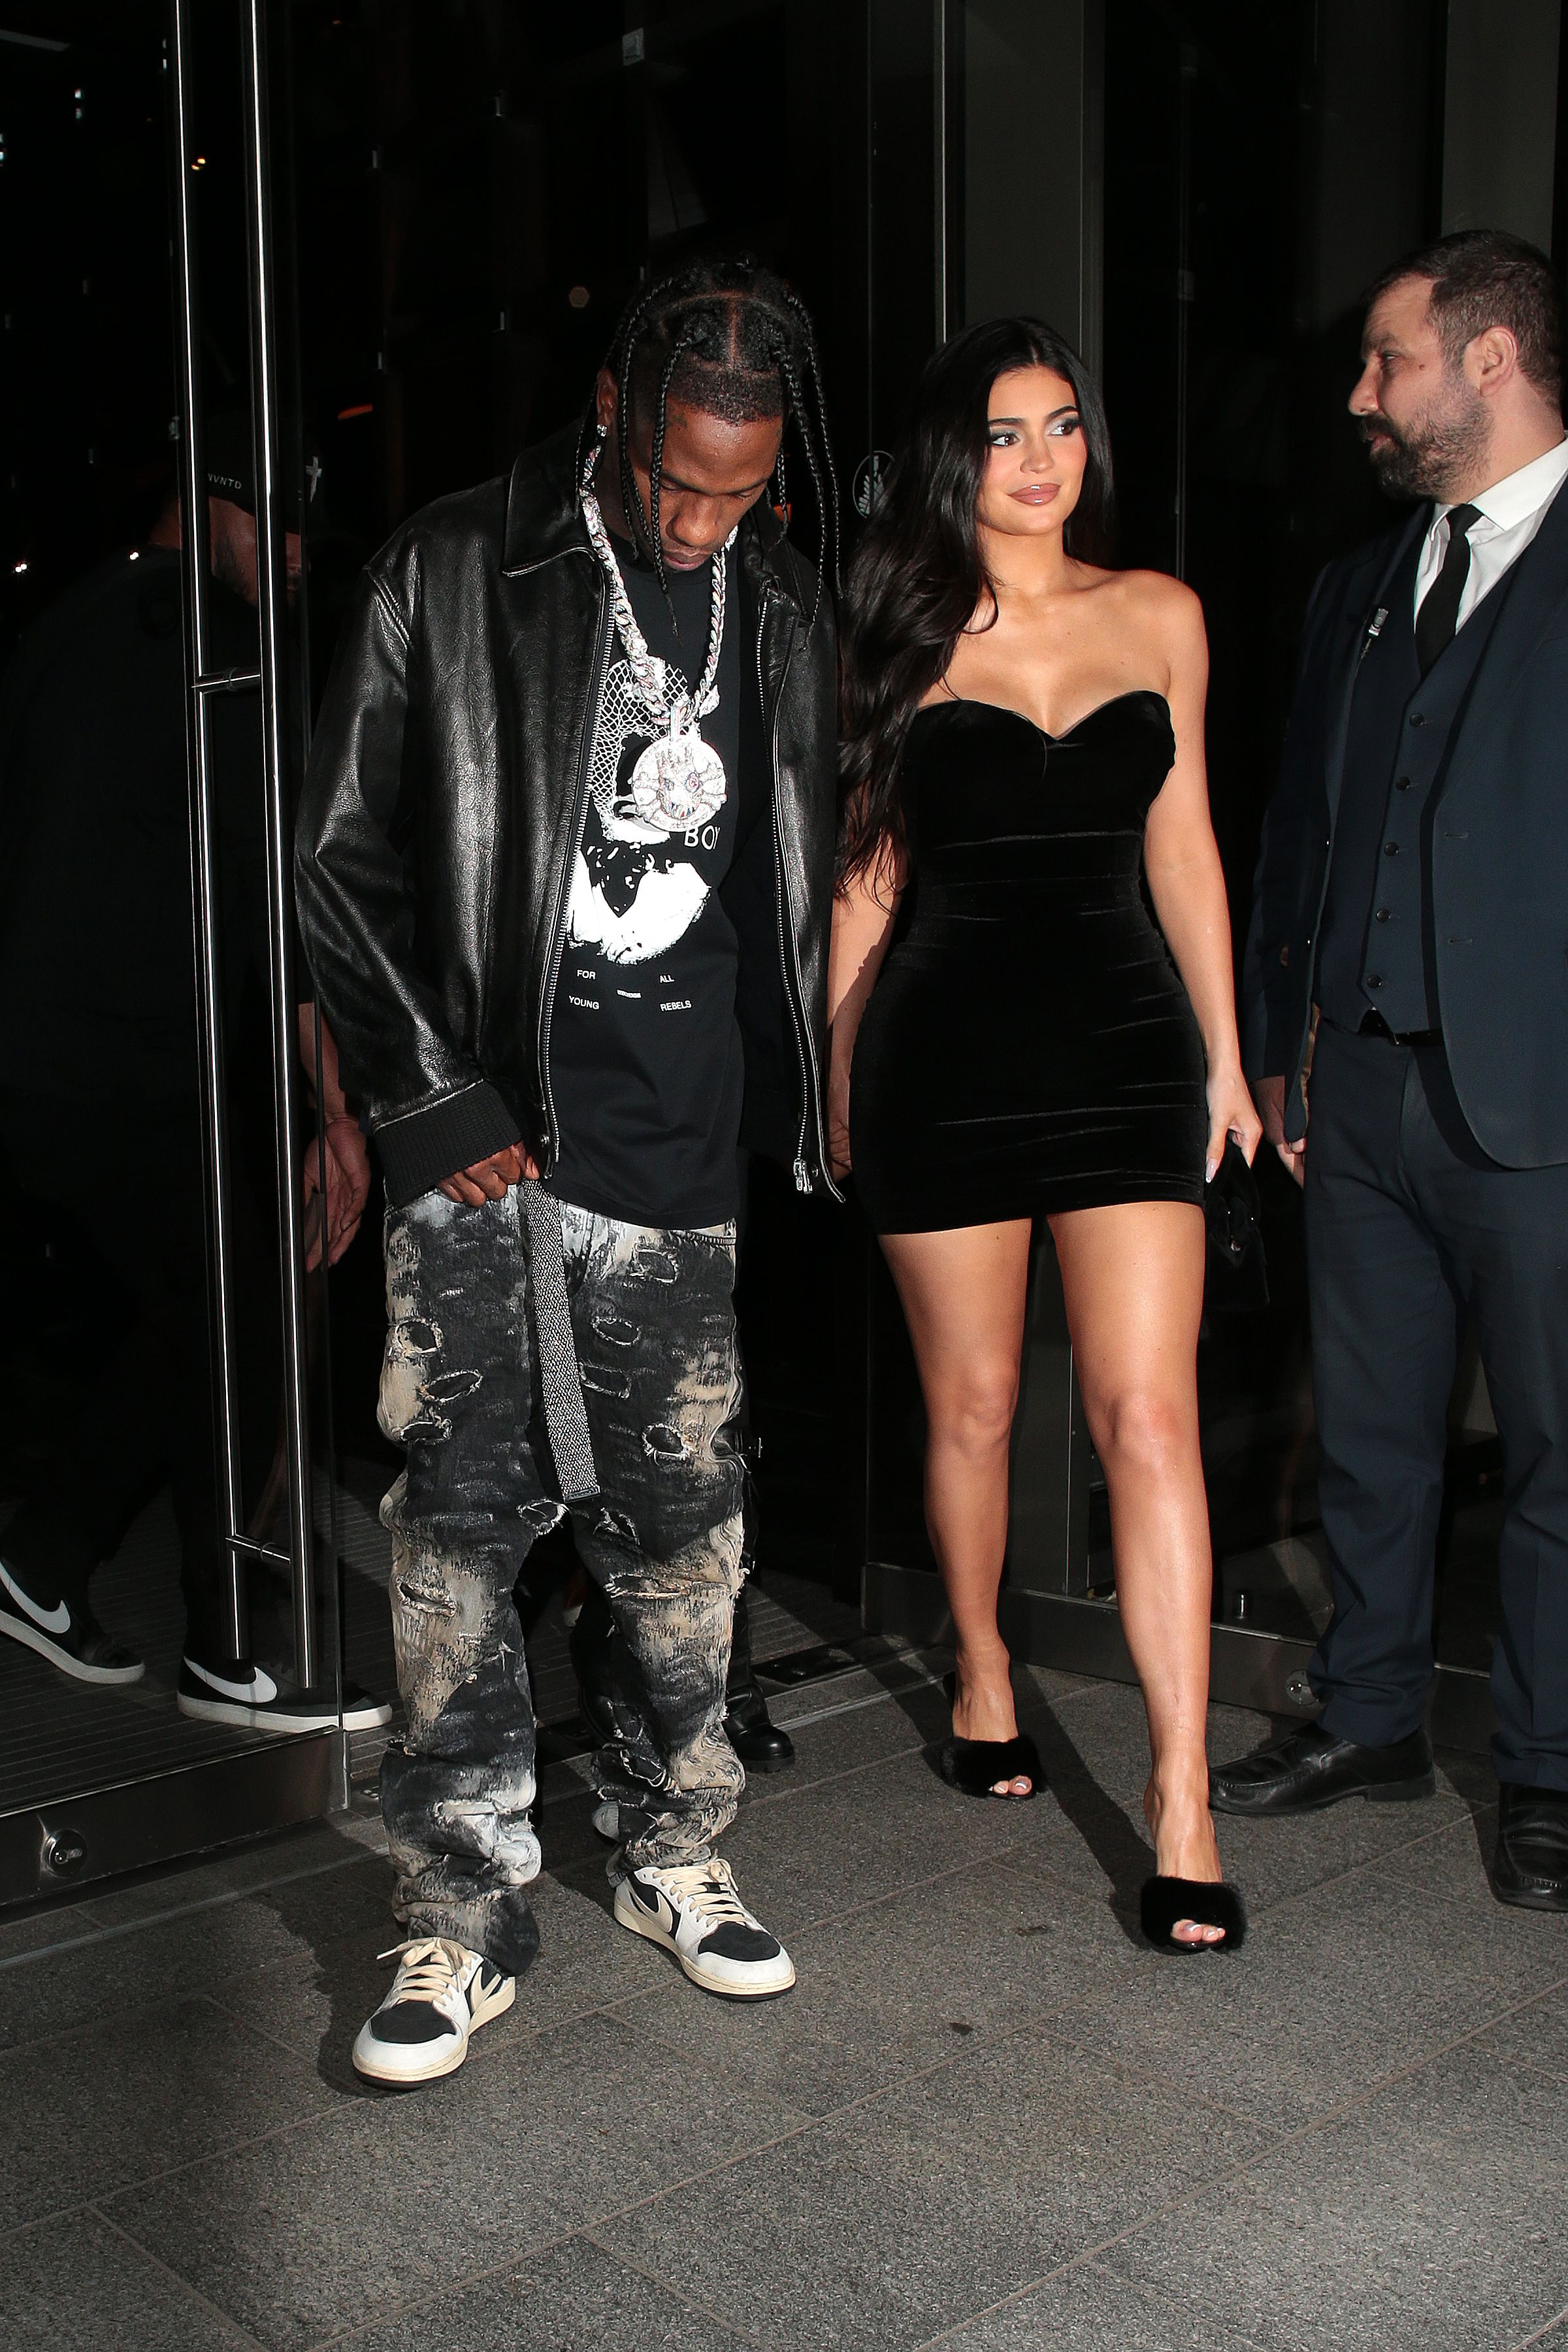 Kylie Jenner Wears Little Black Dress Out in London With Travis Scott